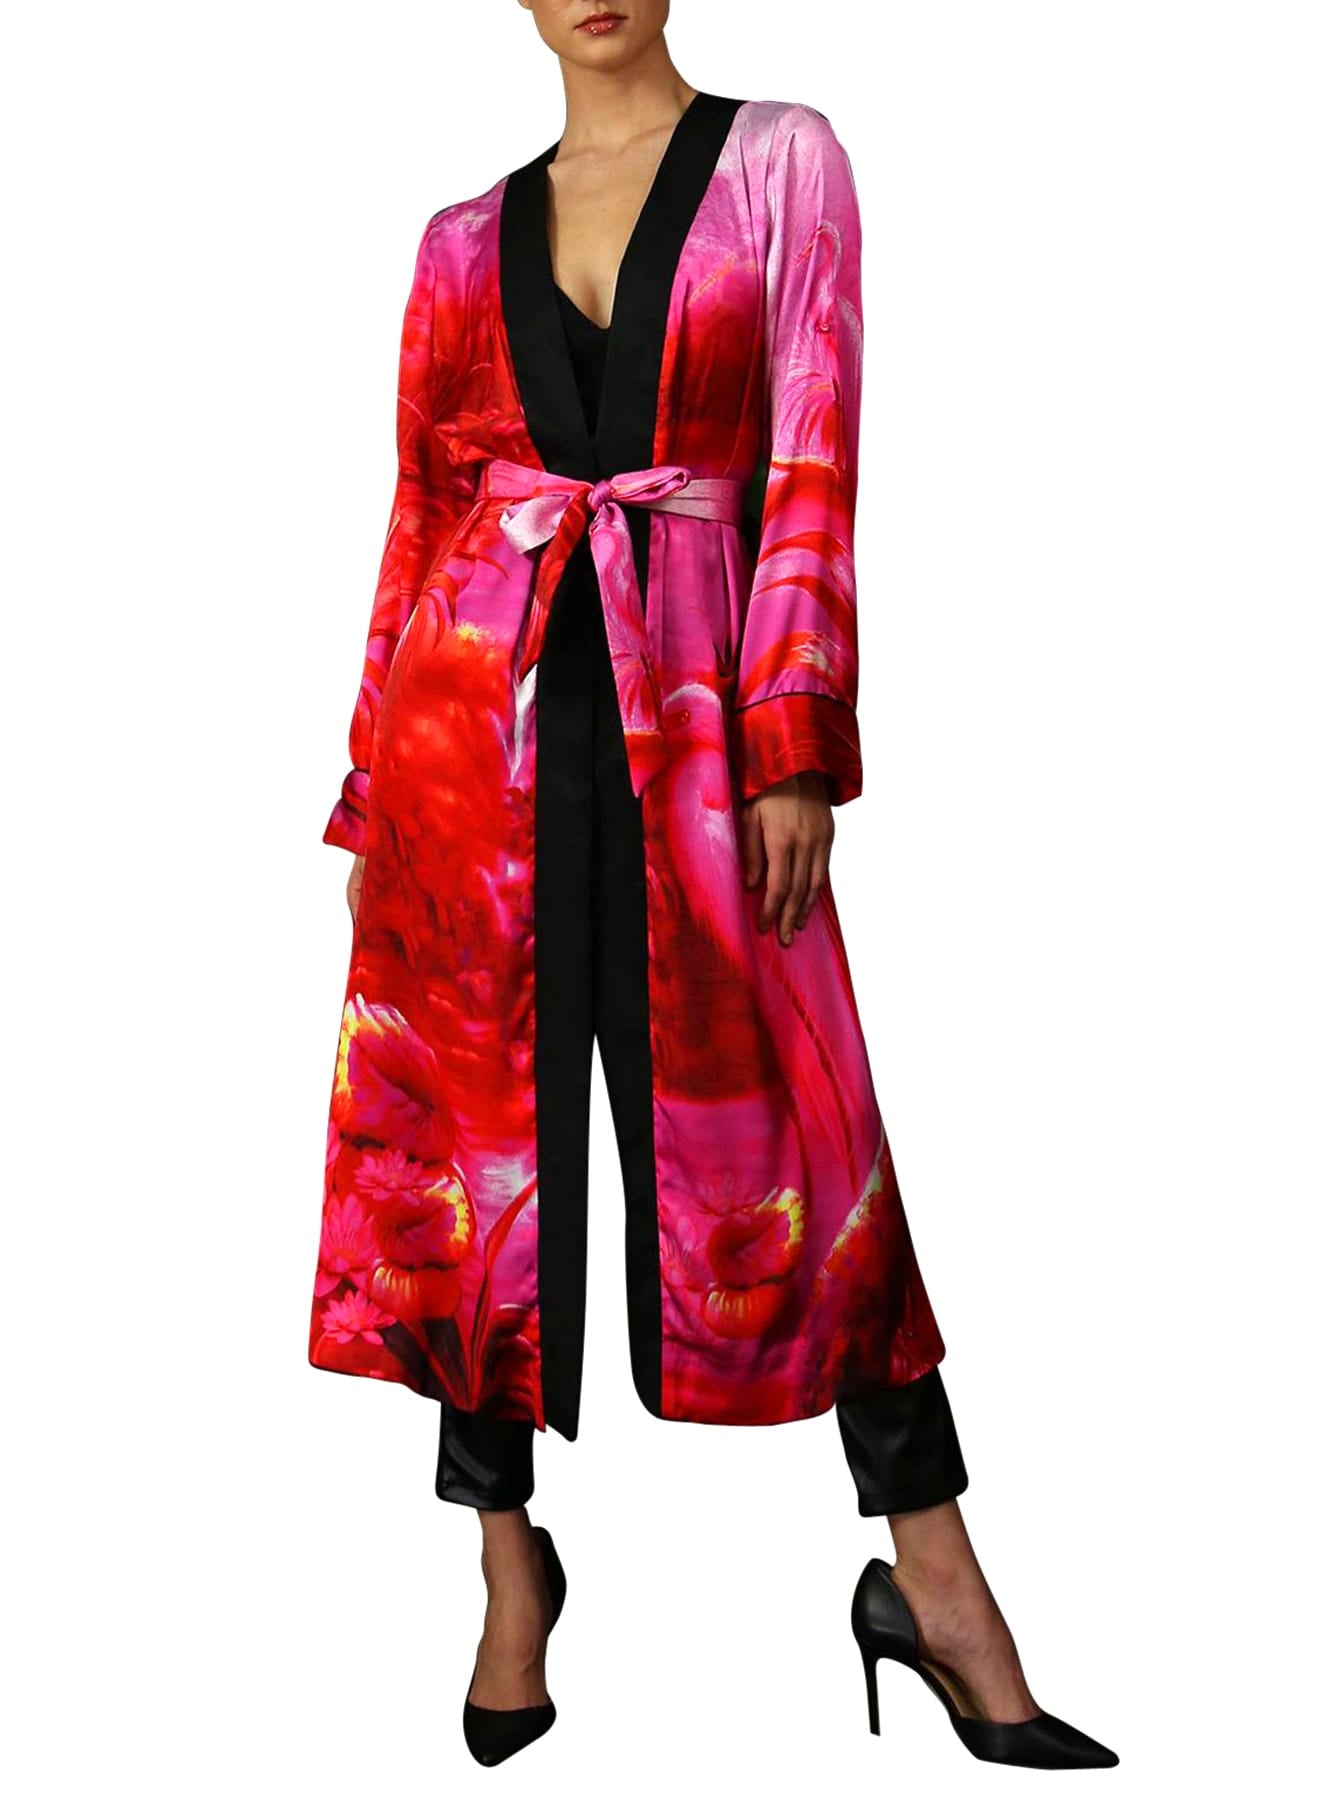 "Kyle X Shahida" "colorful kimono" "silk robes and kimonos" "silk robes for women" "washable silk robe"